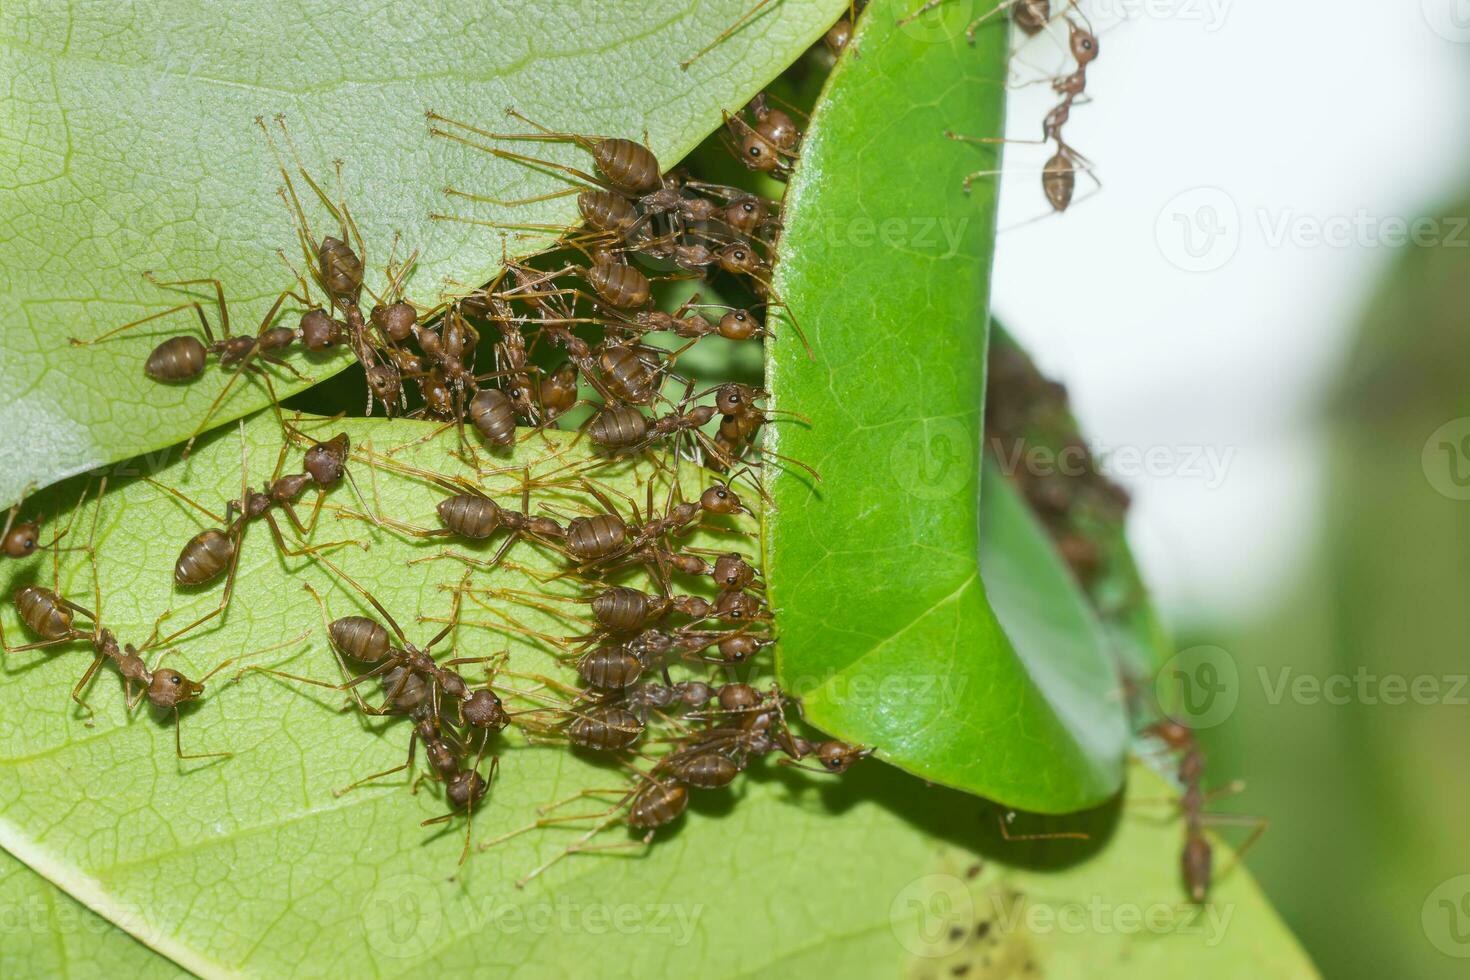 le unité de le fourmi nid bâtiment. photo